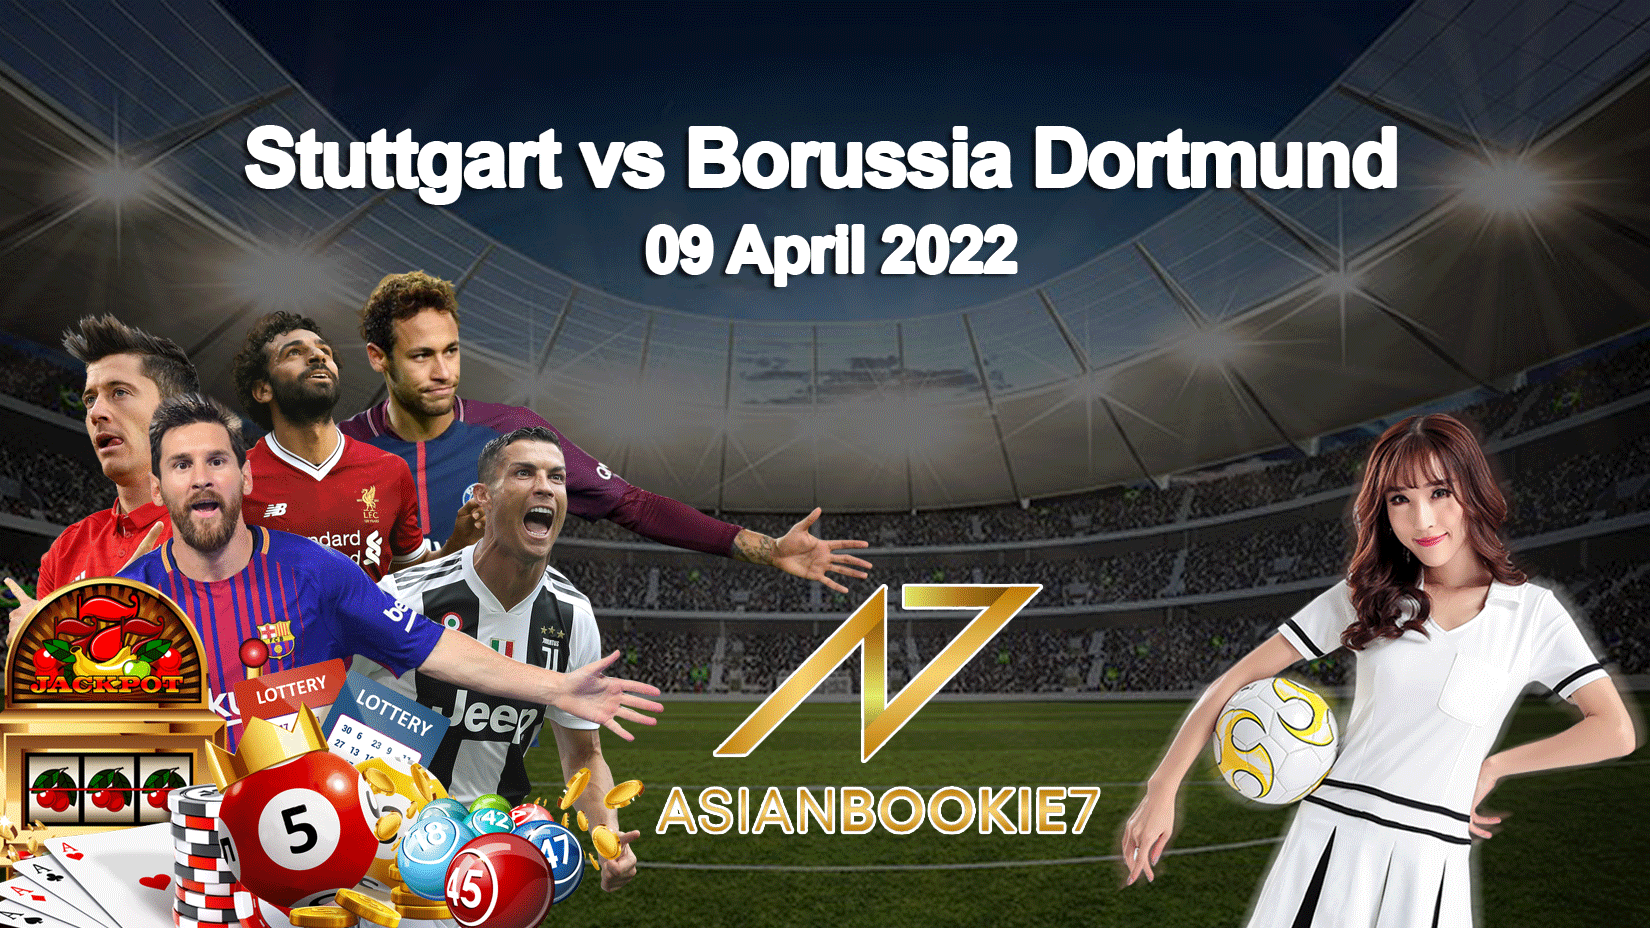 Prediksi Stuttgart vs Borussia Dortmund 09 April 2022